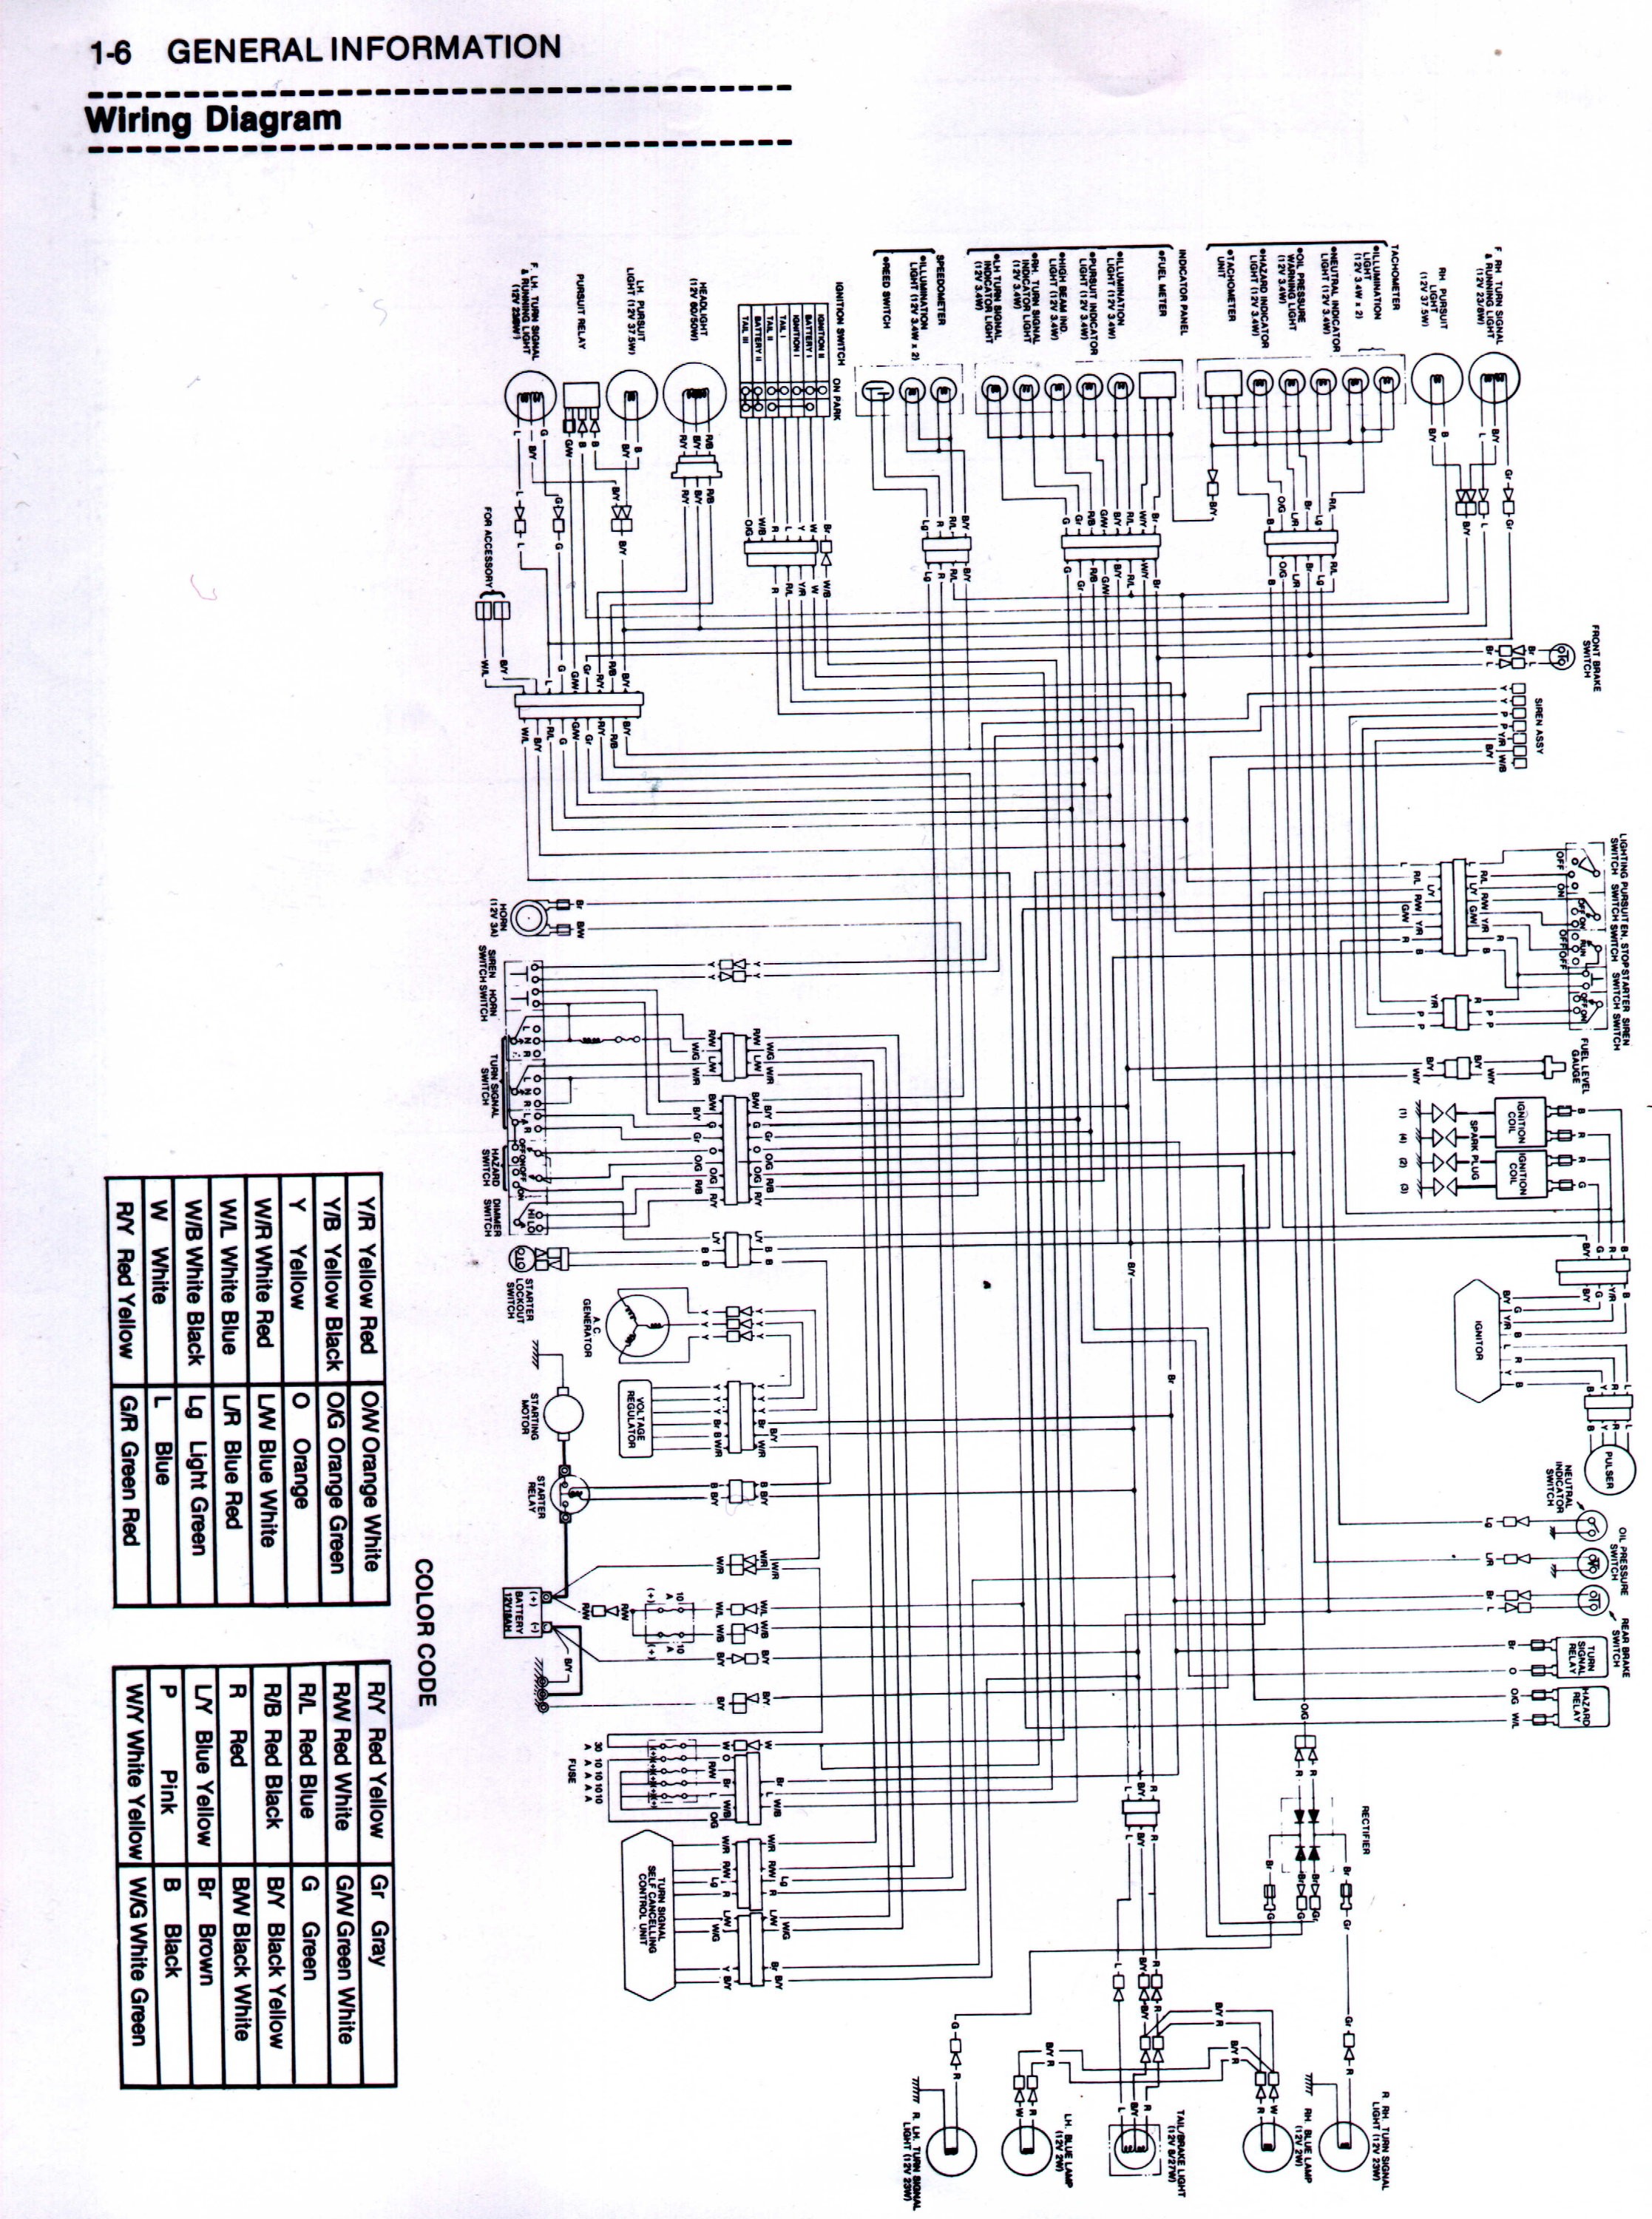 1980 Honda Cb650 Wiring Diagram from detoxicrecenze.com